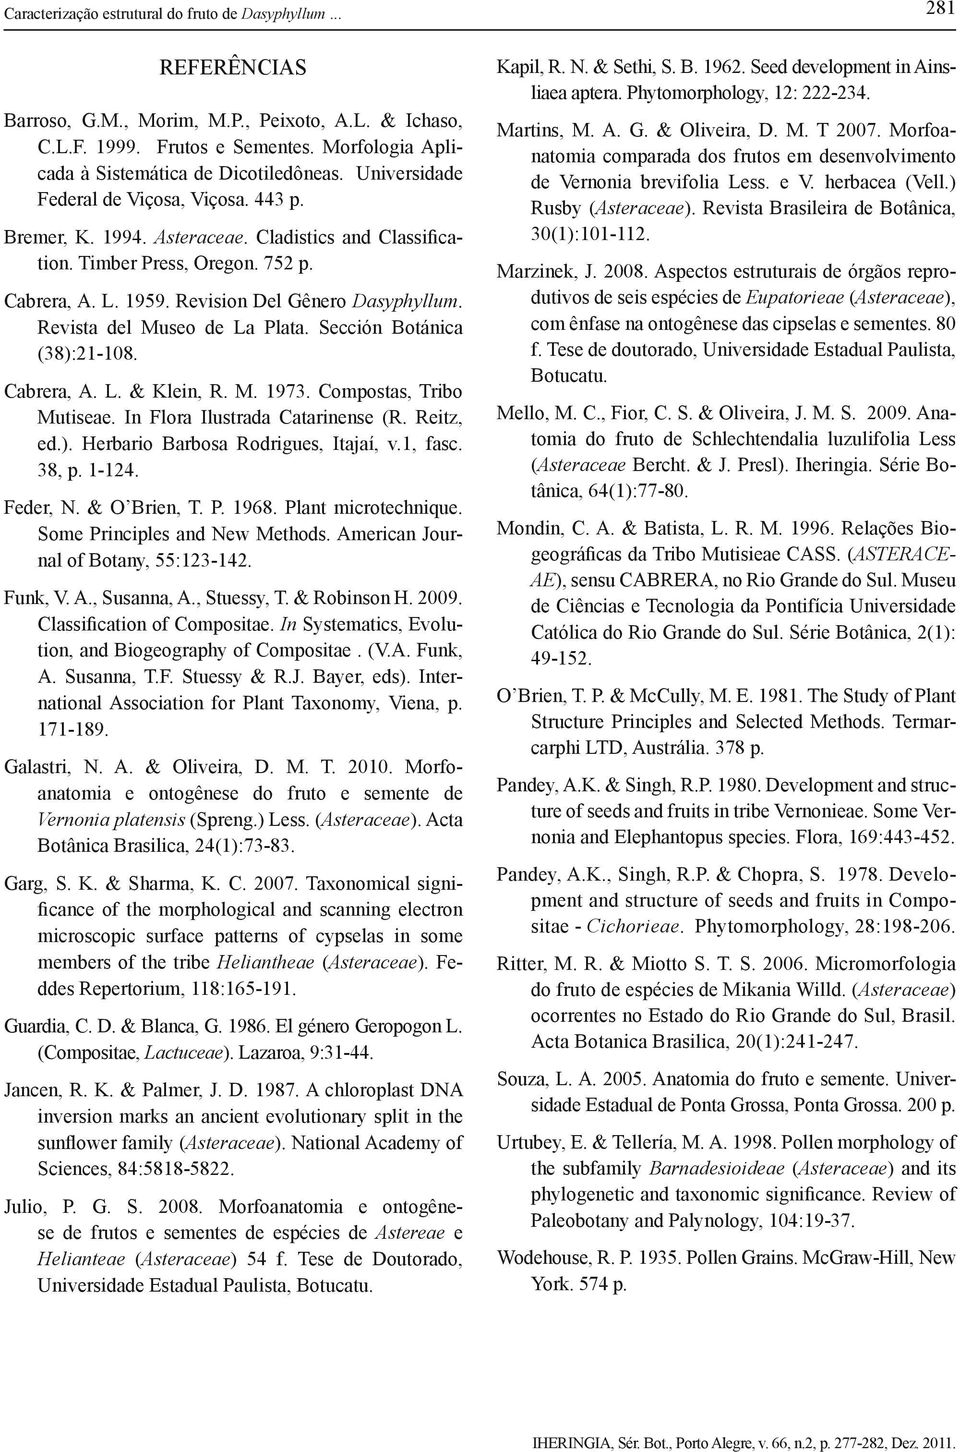 L. 1959. Revision Del Gênero Dasyphyllum. Revista del Museo de La Plata. Sección Botánica (38):21-108. Cabrera, A. L. & Klein, R. M. 1973. Compostas, Tribo Mutiseae. In Flora Ilustrada Catarinense (R.